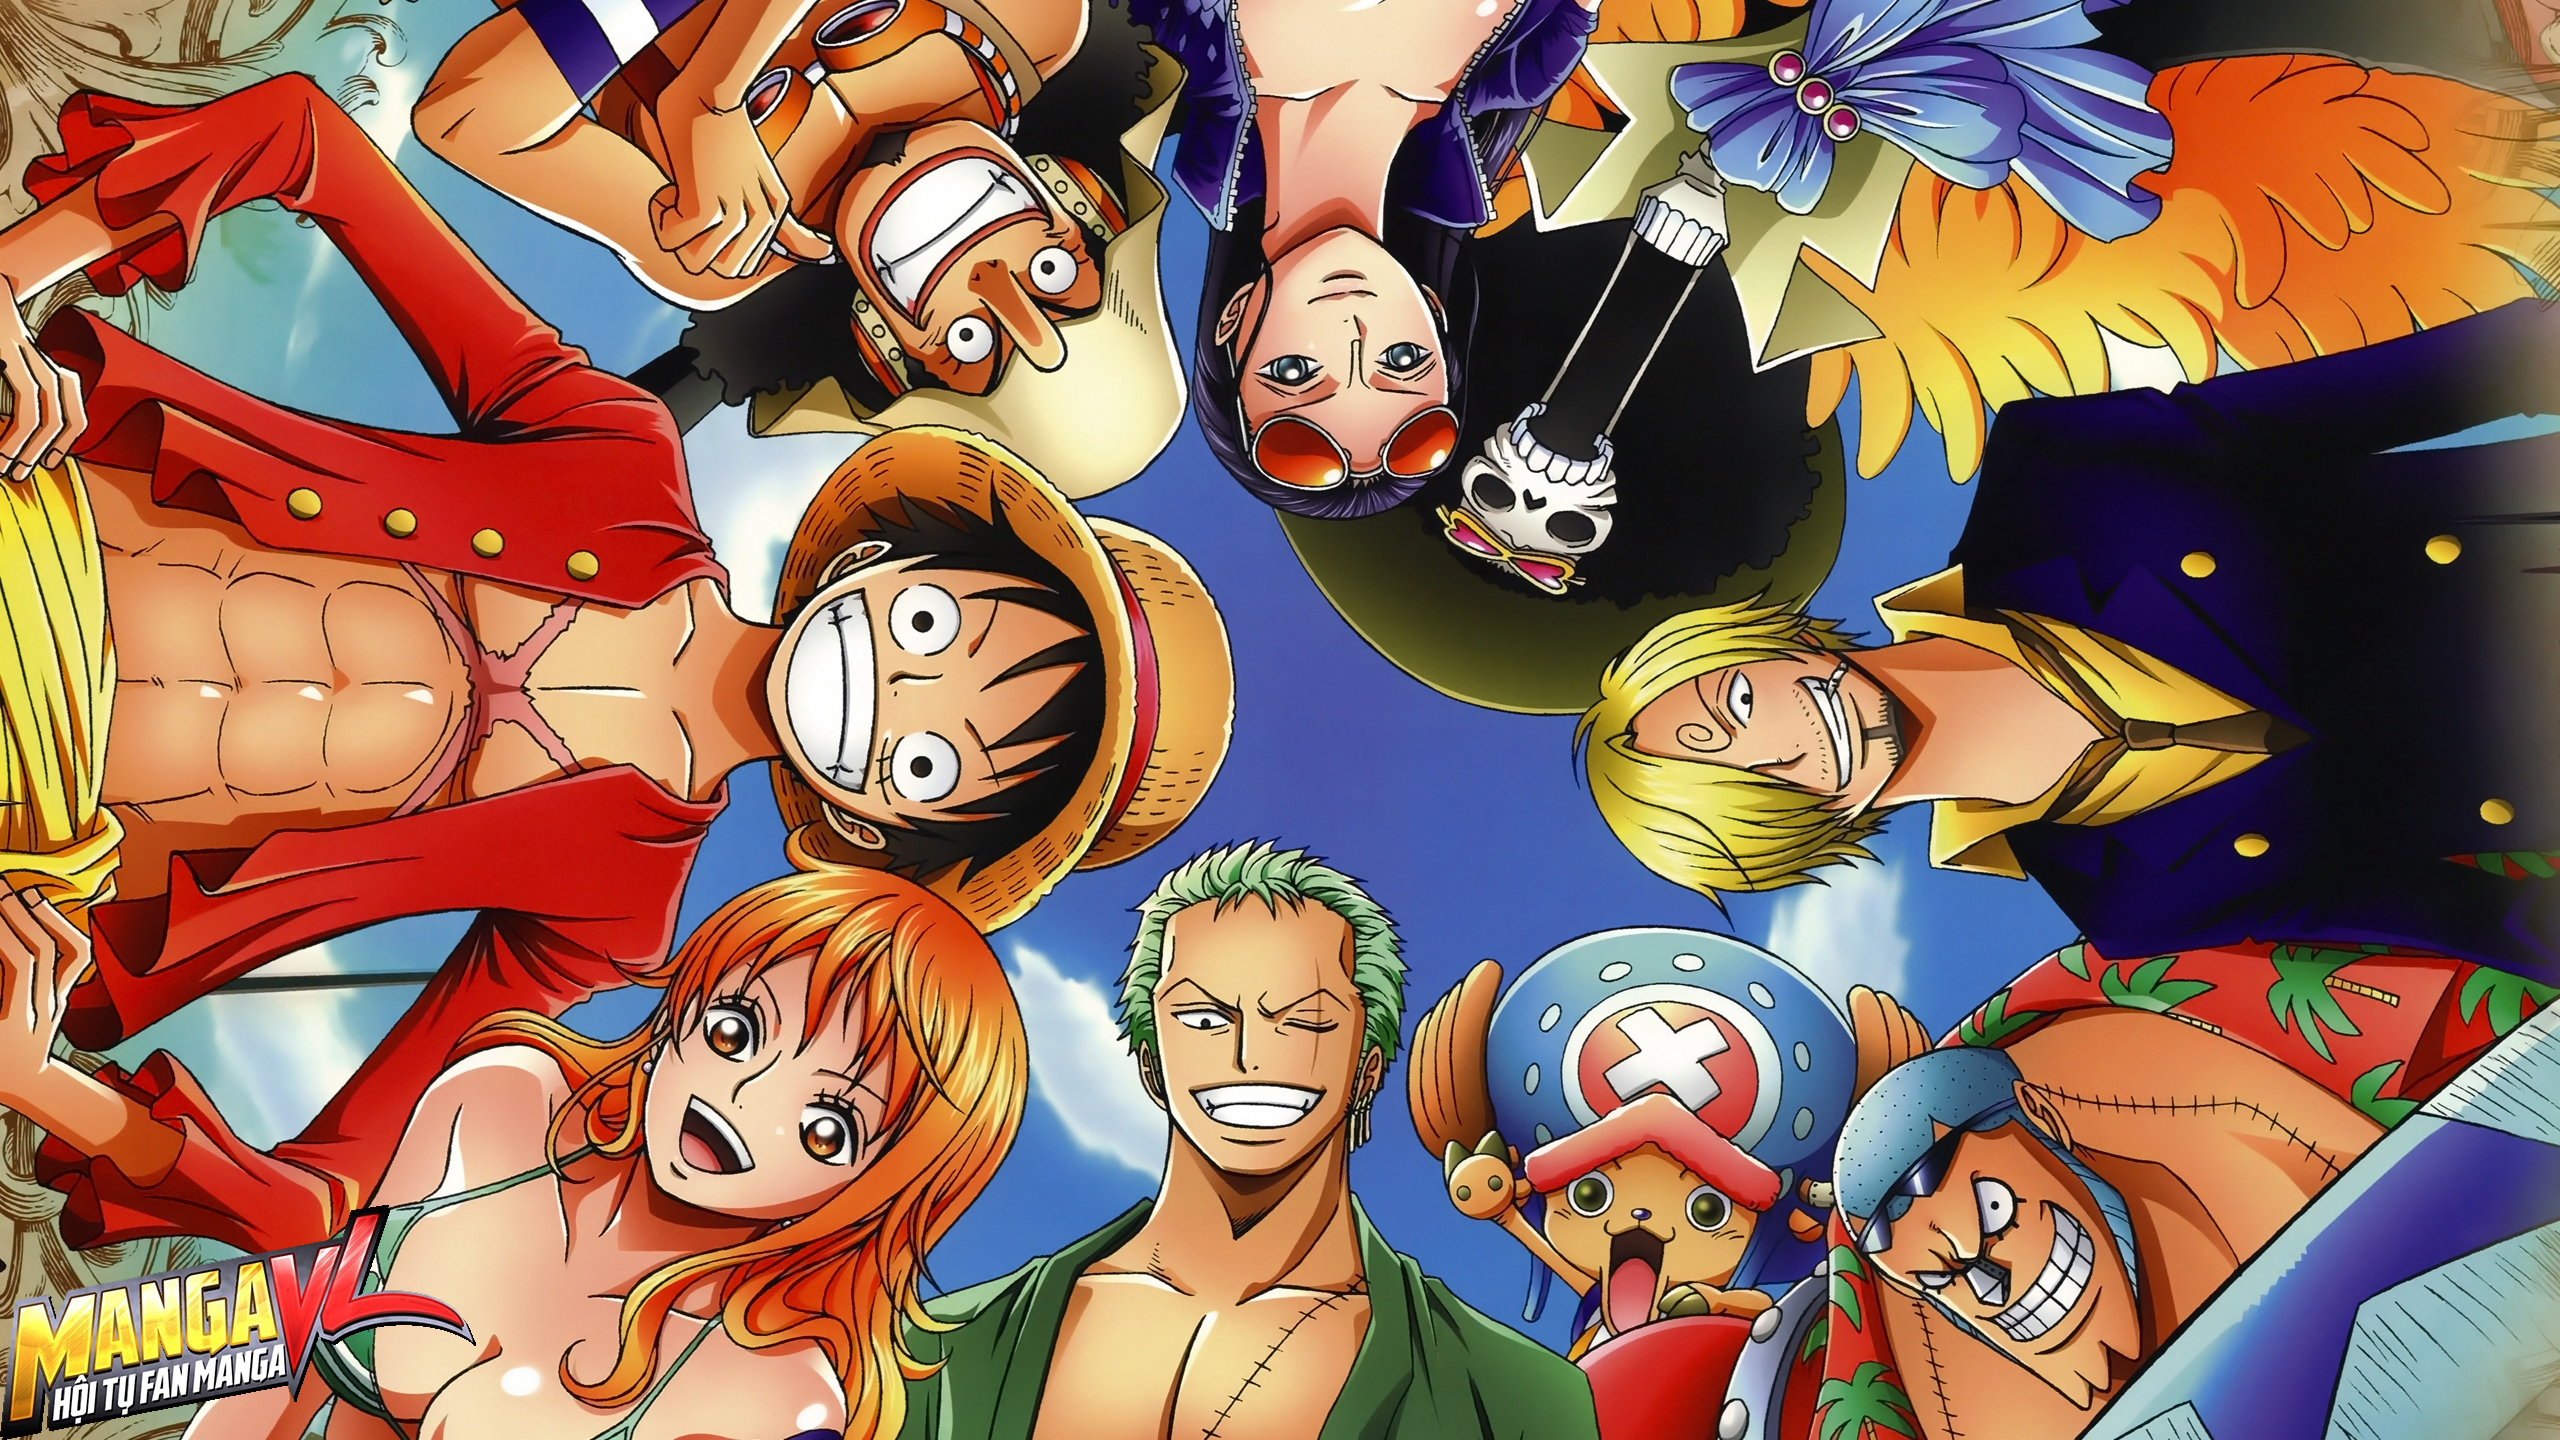 Sức mạnh, tinh thần và vẻ đẹp kiêu hãnh của nhân vật nữ trong One Piece đều khiến cộng đồng fan hâm mộ mê mẩn. Bạn sẽ không thể bỏ lỡ cơ hội chiêm ngưỡng những hình ảnh tuyệt đẹp và đầy cảm hứng của các nữ chiến binh trong thế giới One Piece.